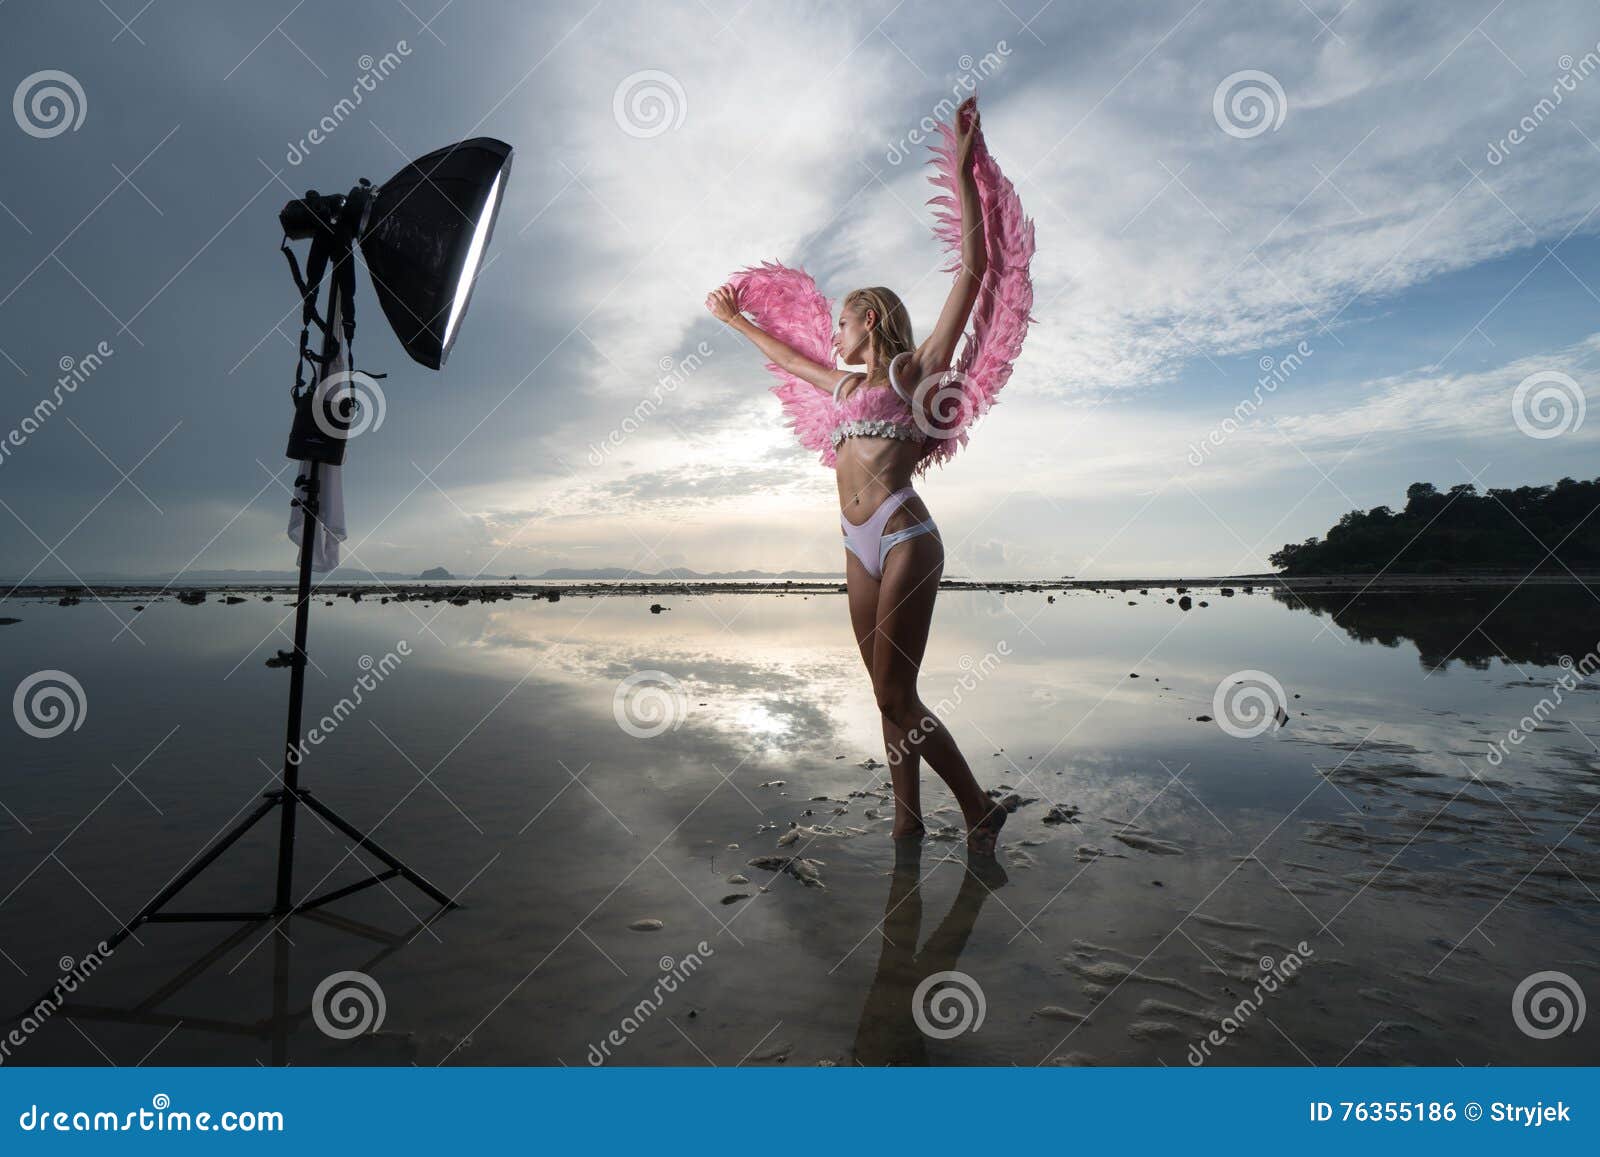 Female Flash At Beach